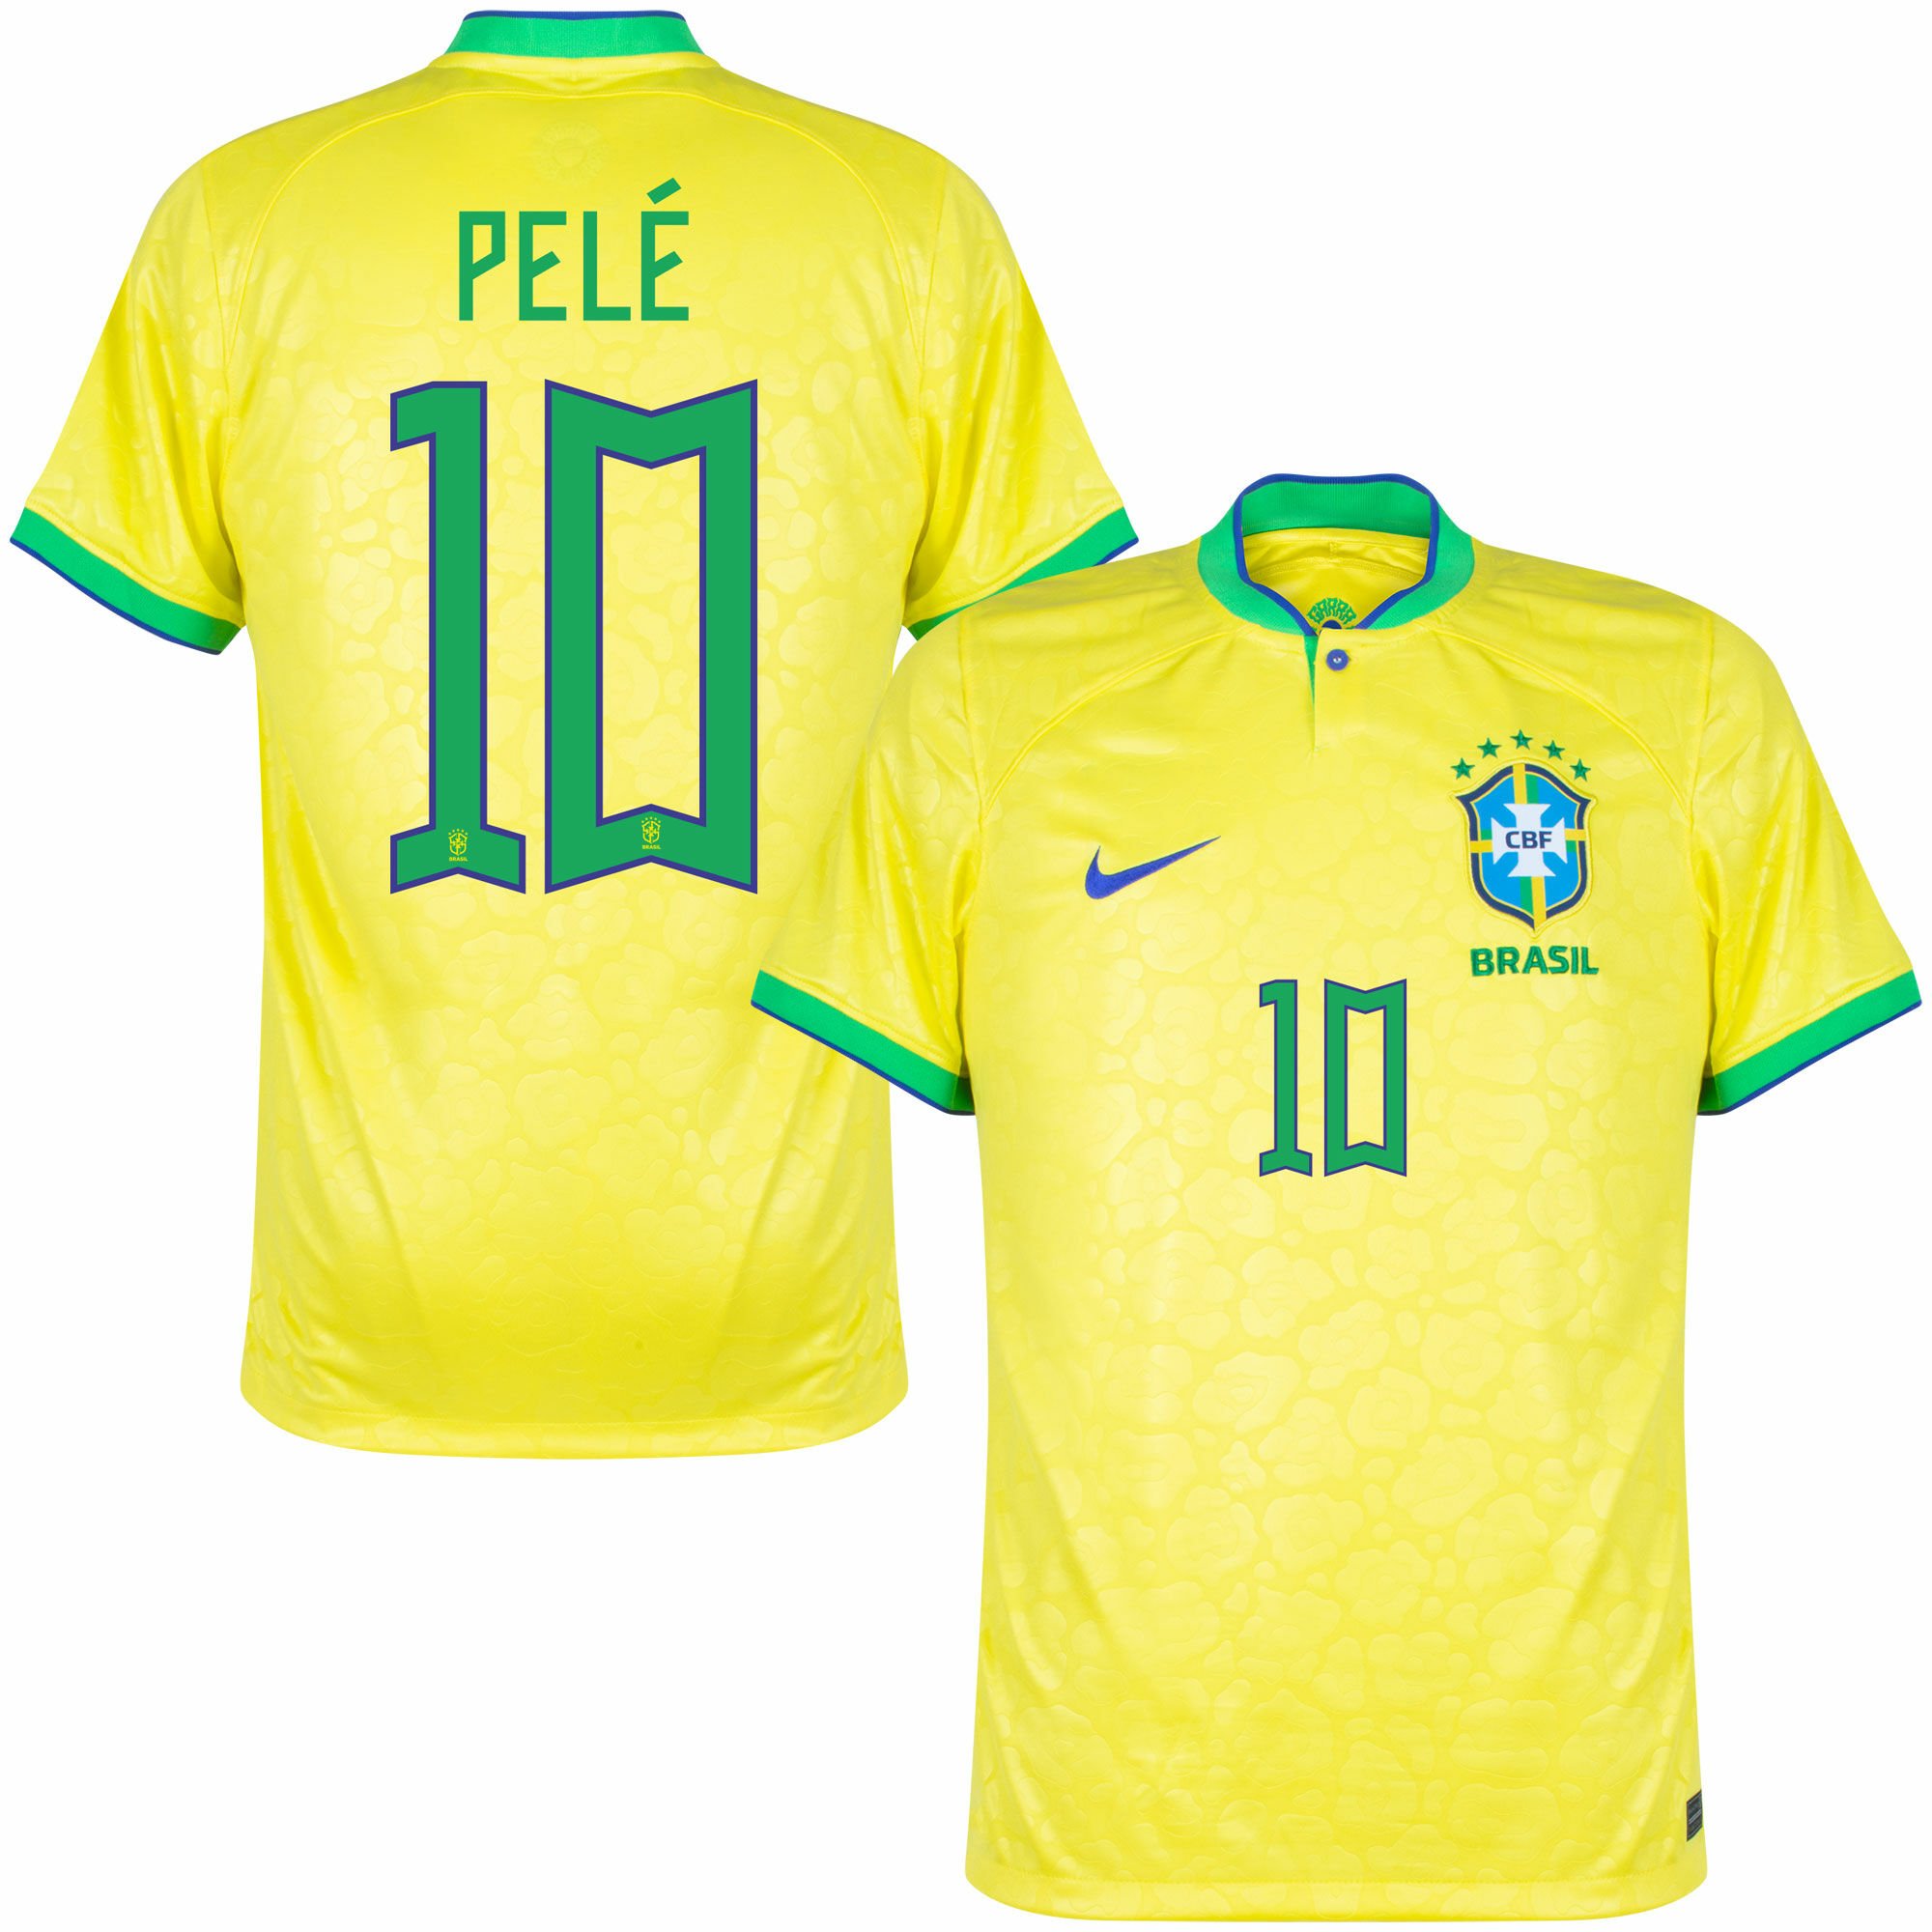 Pelé Brasil 10 Green Hoodie